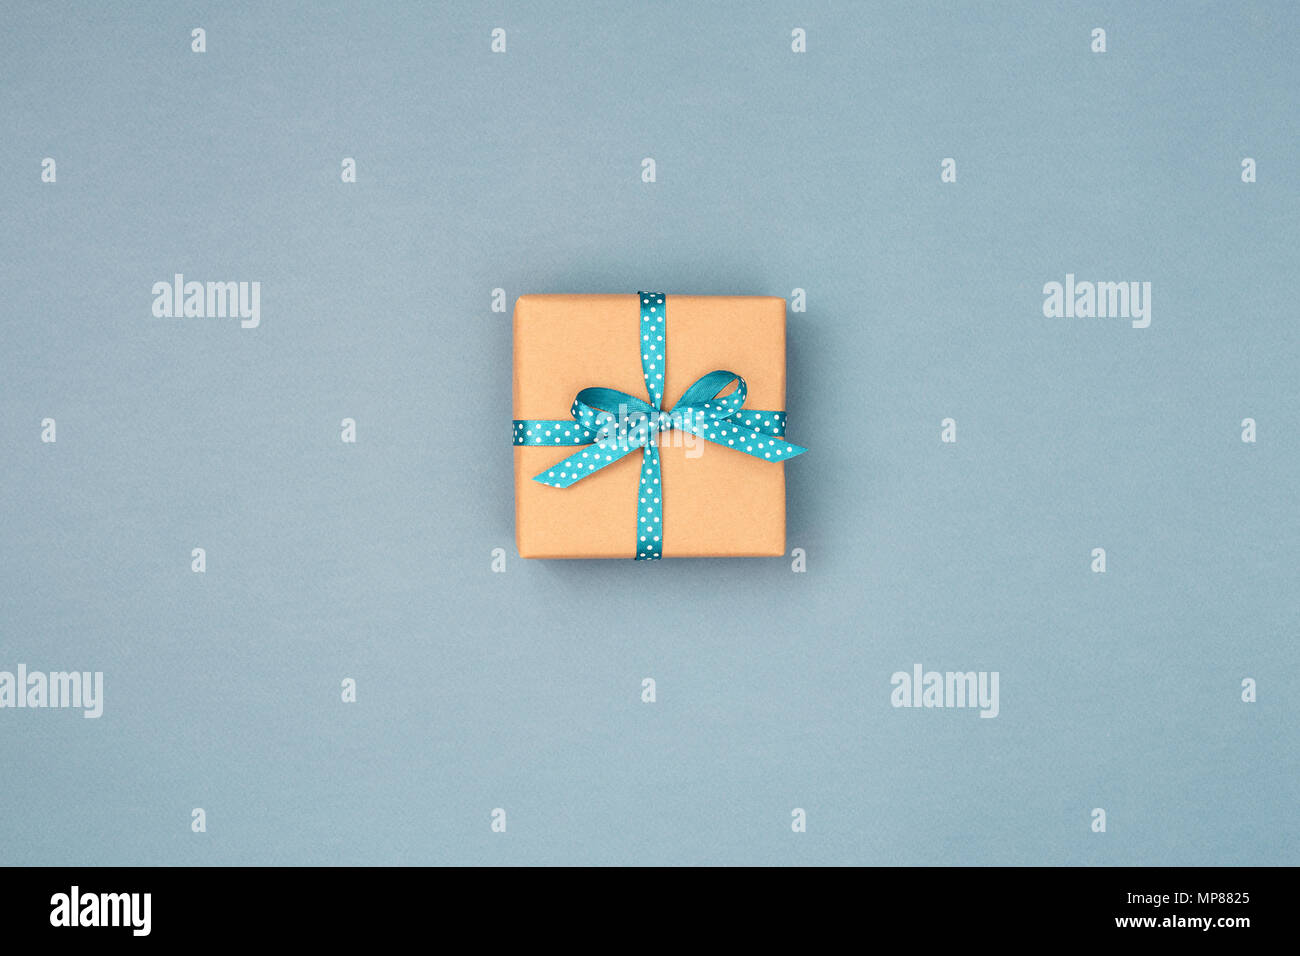 Une boîte-cadeau enveloppé dans du papier kraft et attaché avec du ruban bleu à pois blancs sur fond gris bleu. Vue de dessus, la place pour le texte. Maison de concept. Banque D'Images